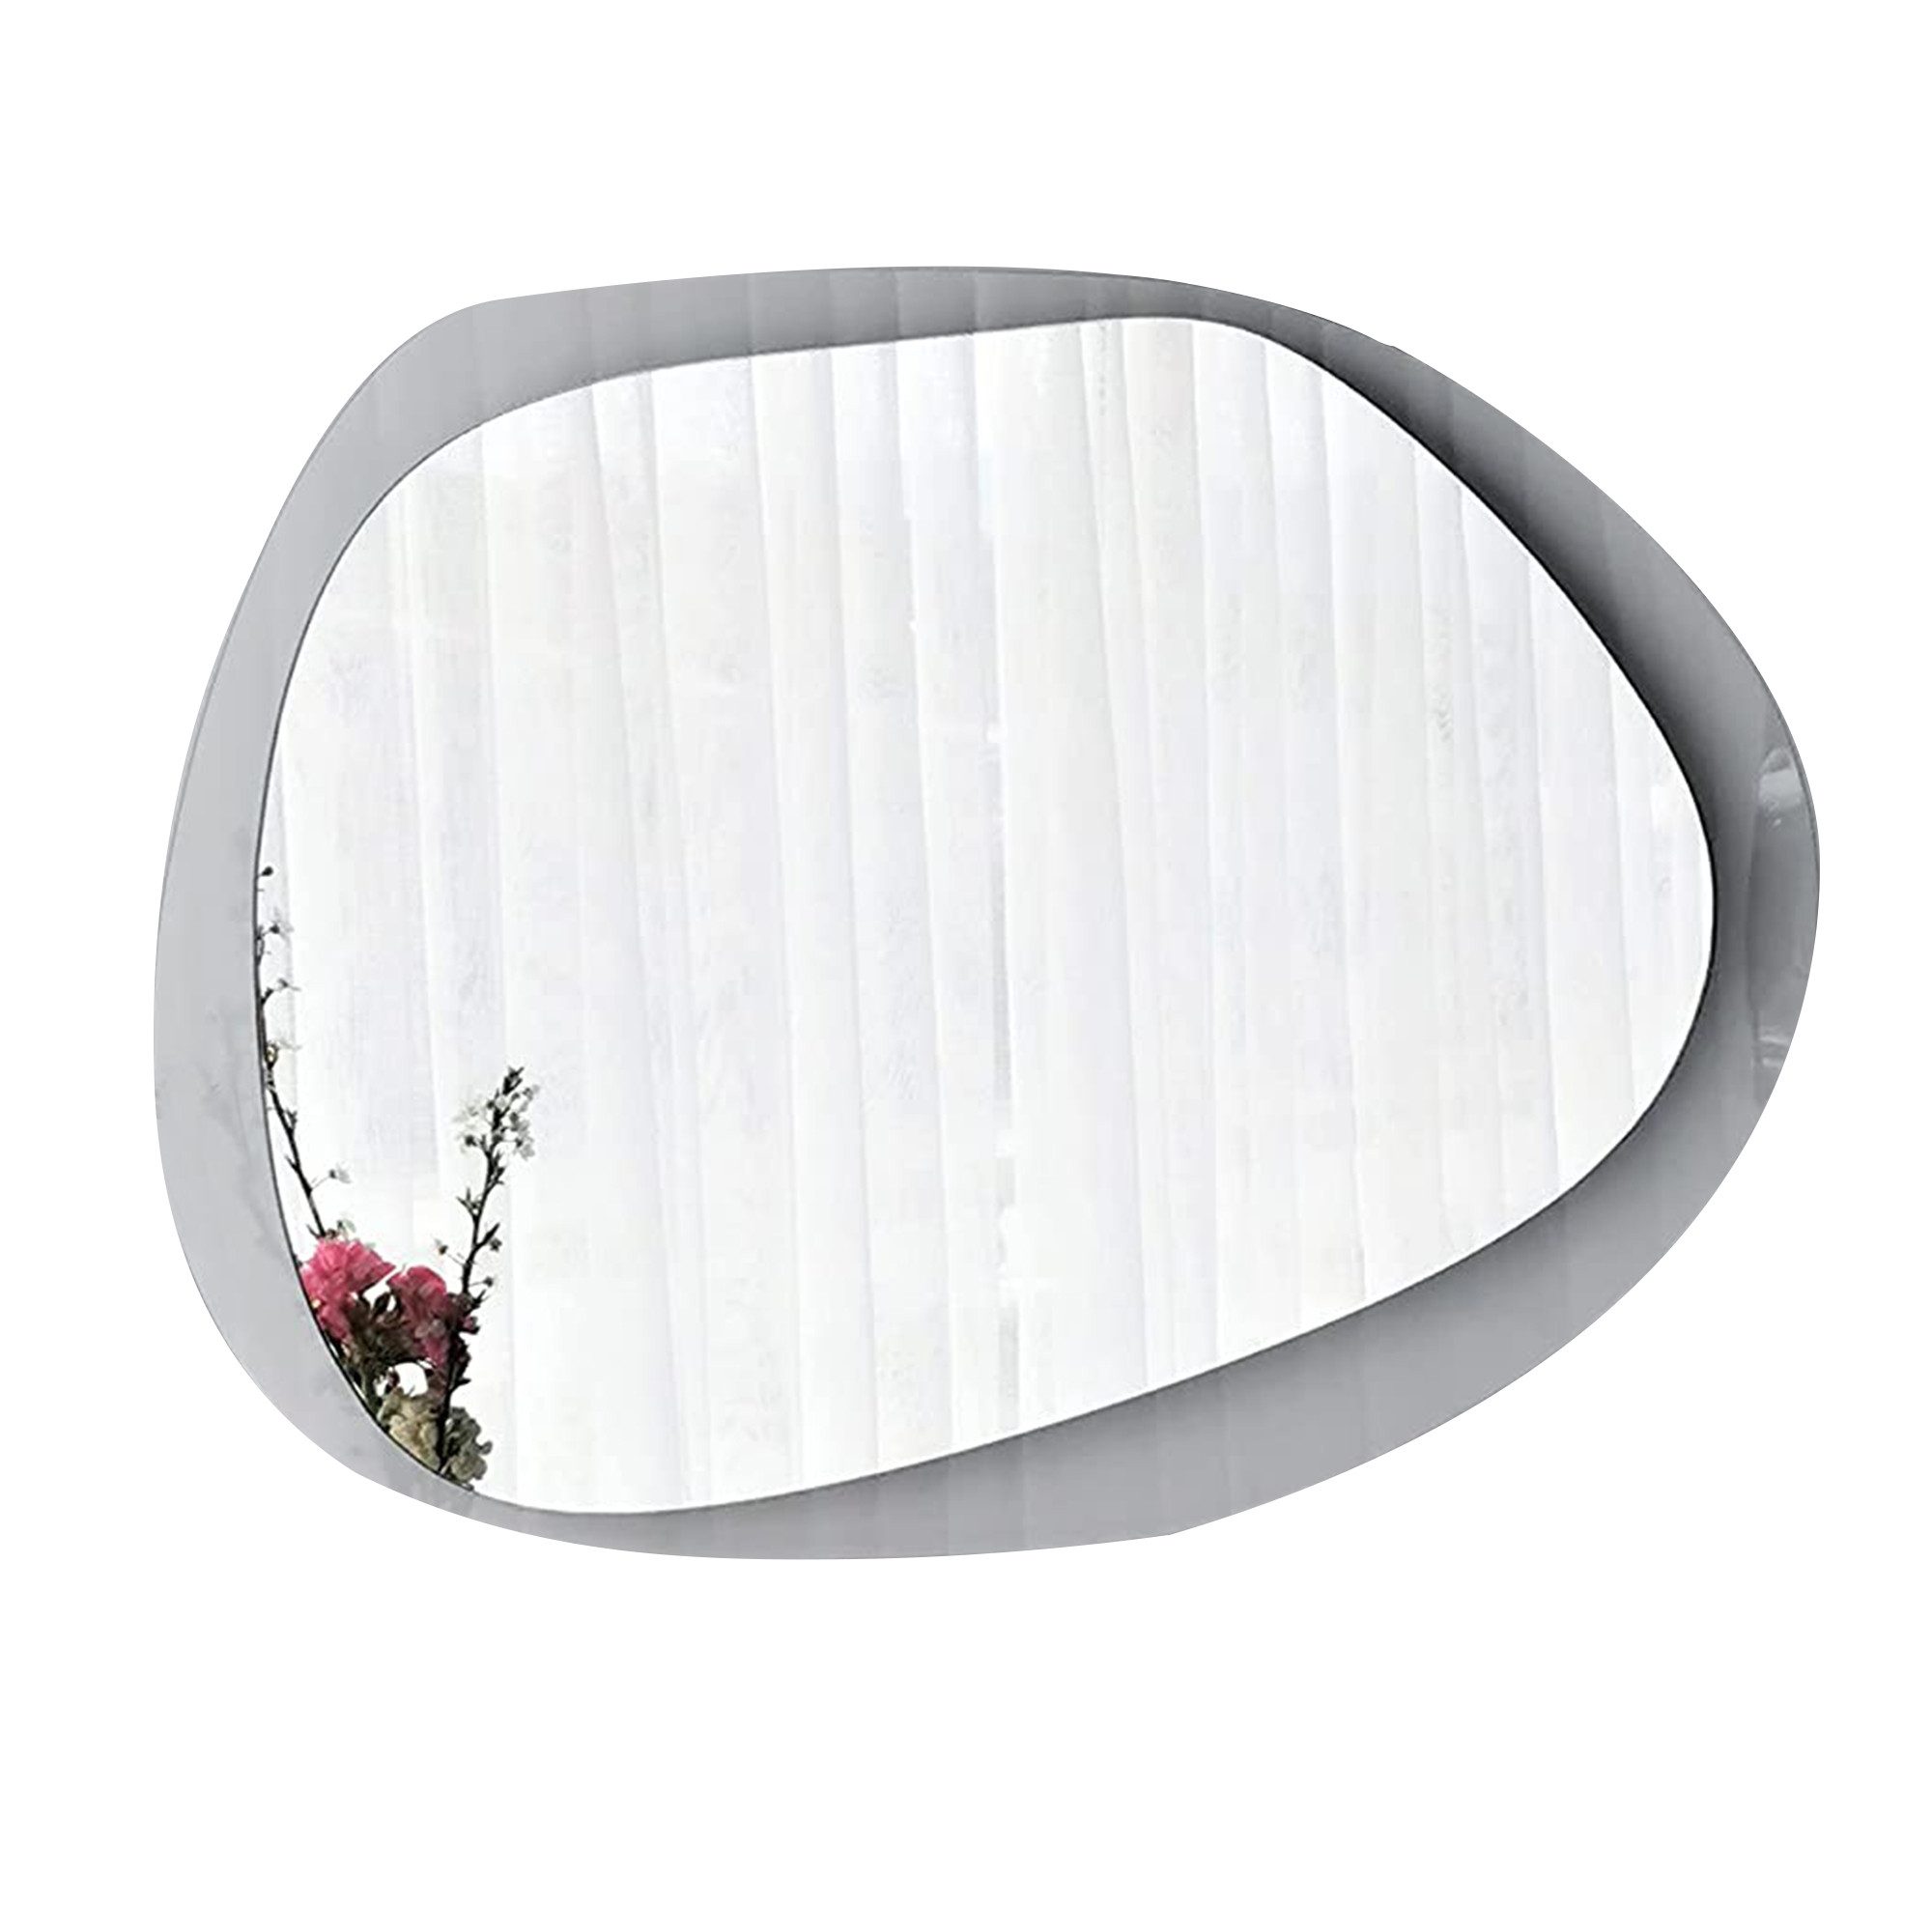 Gozos Spiegel Wandspiegel mit hölzerner Unterseite l Asymmetrischer Spiegel (75 x 55 cm), Mirror Spiegel gerahmt zum Aufhängen